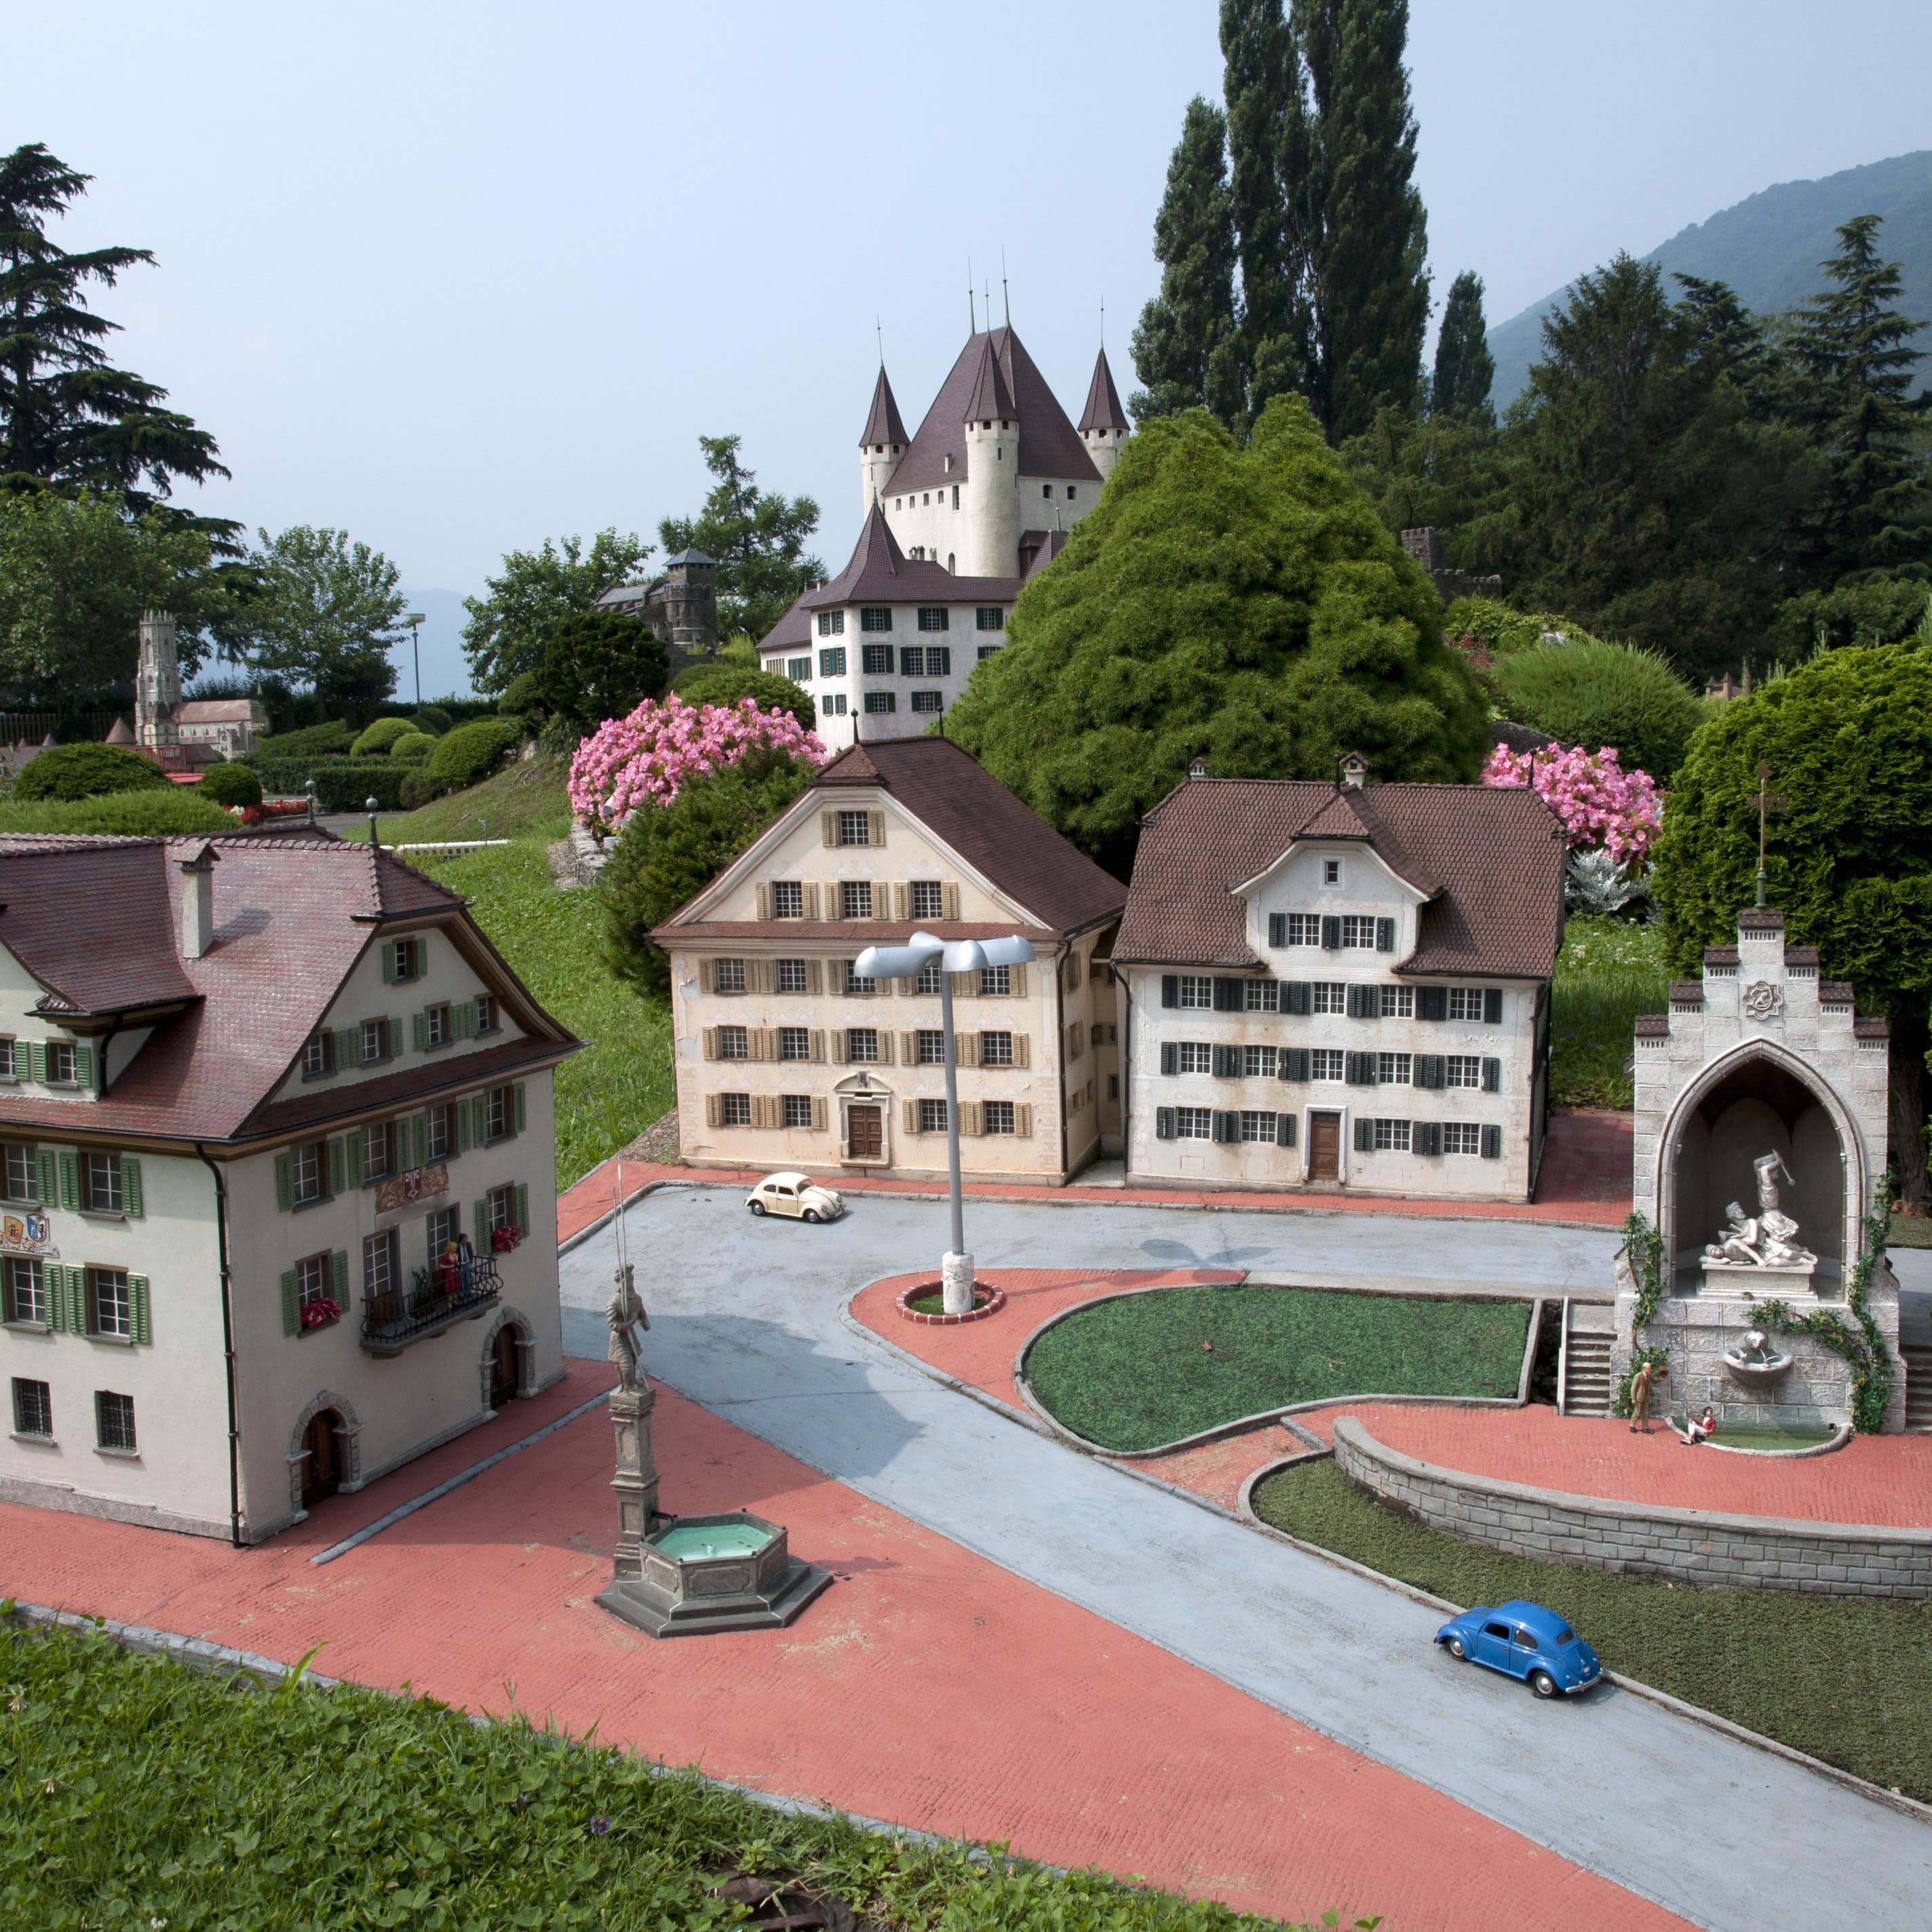 Einige Häuser, Brunnen und eine Straße in einer Miniaturwelt